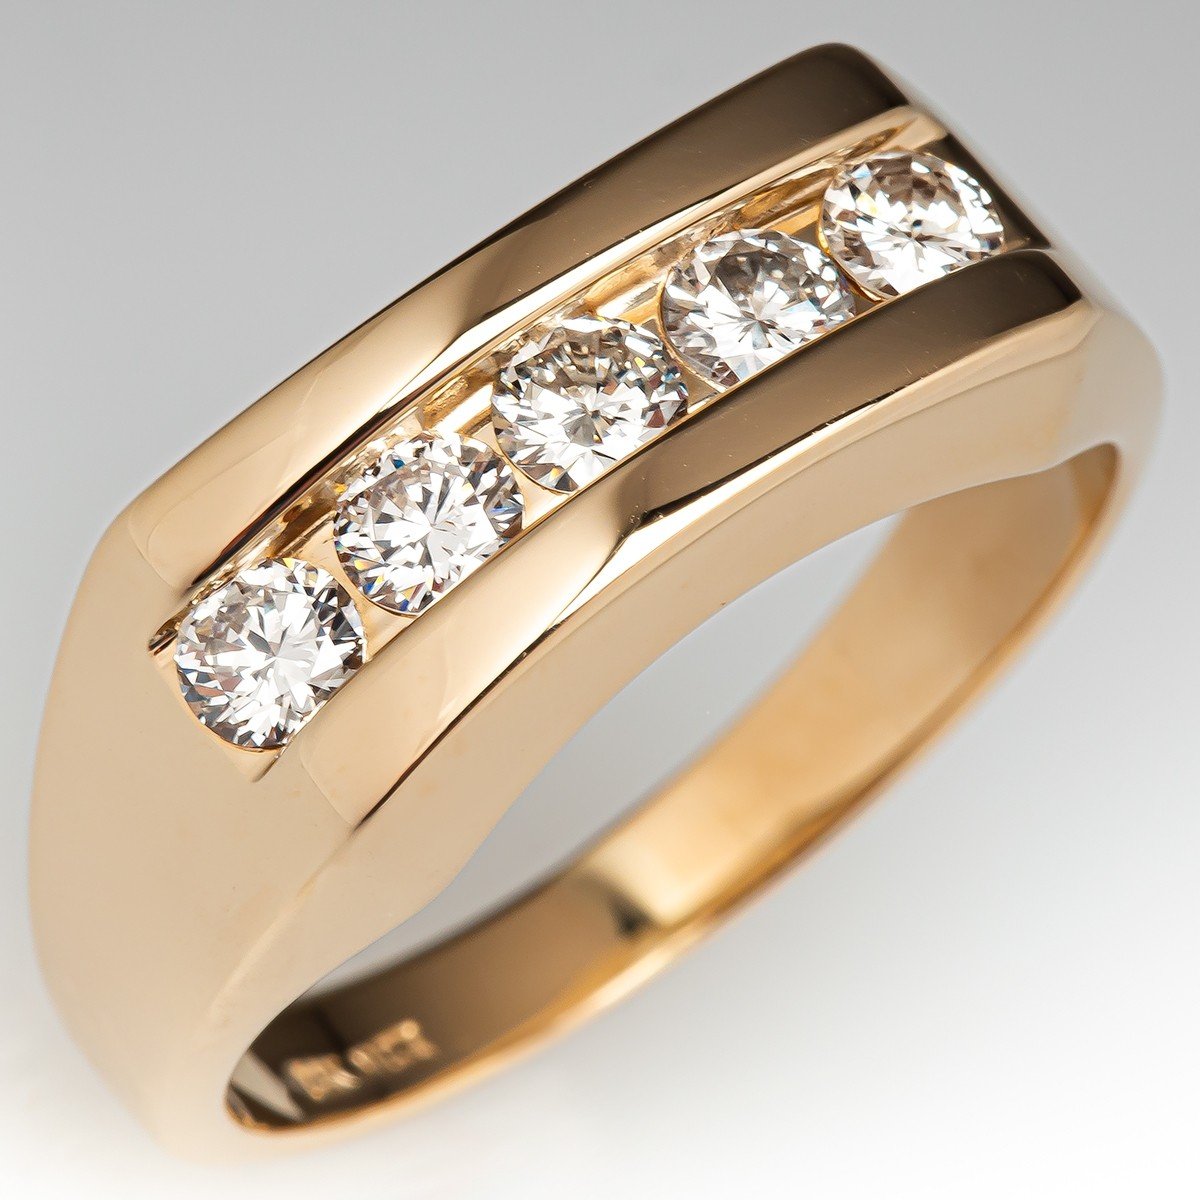 Buy Diamond Men's Ring, 10K Yellow Gold Ring, Diamond Cluster Ring, Gold  Rings For Men, Wedding Ring For Him 2.00 ctw (Size 12) at ShopLC.